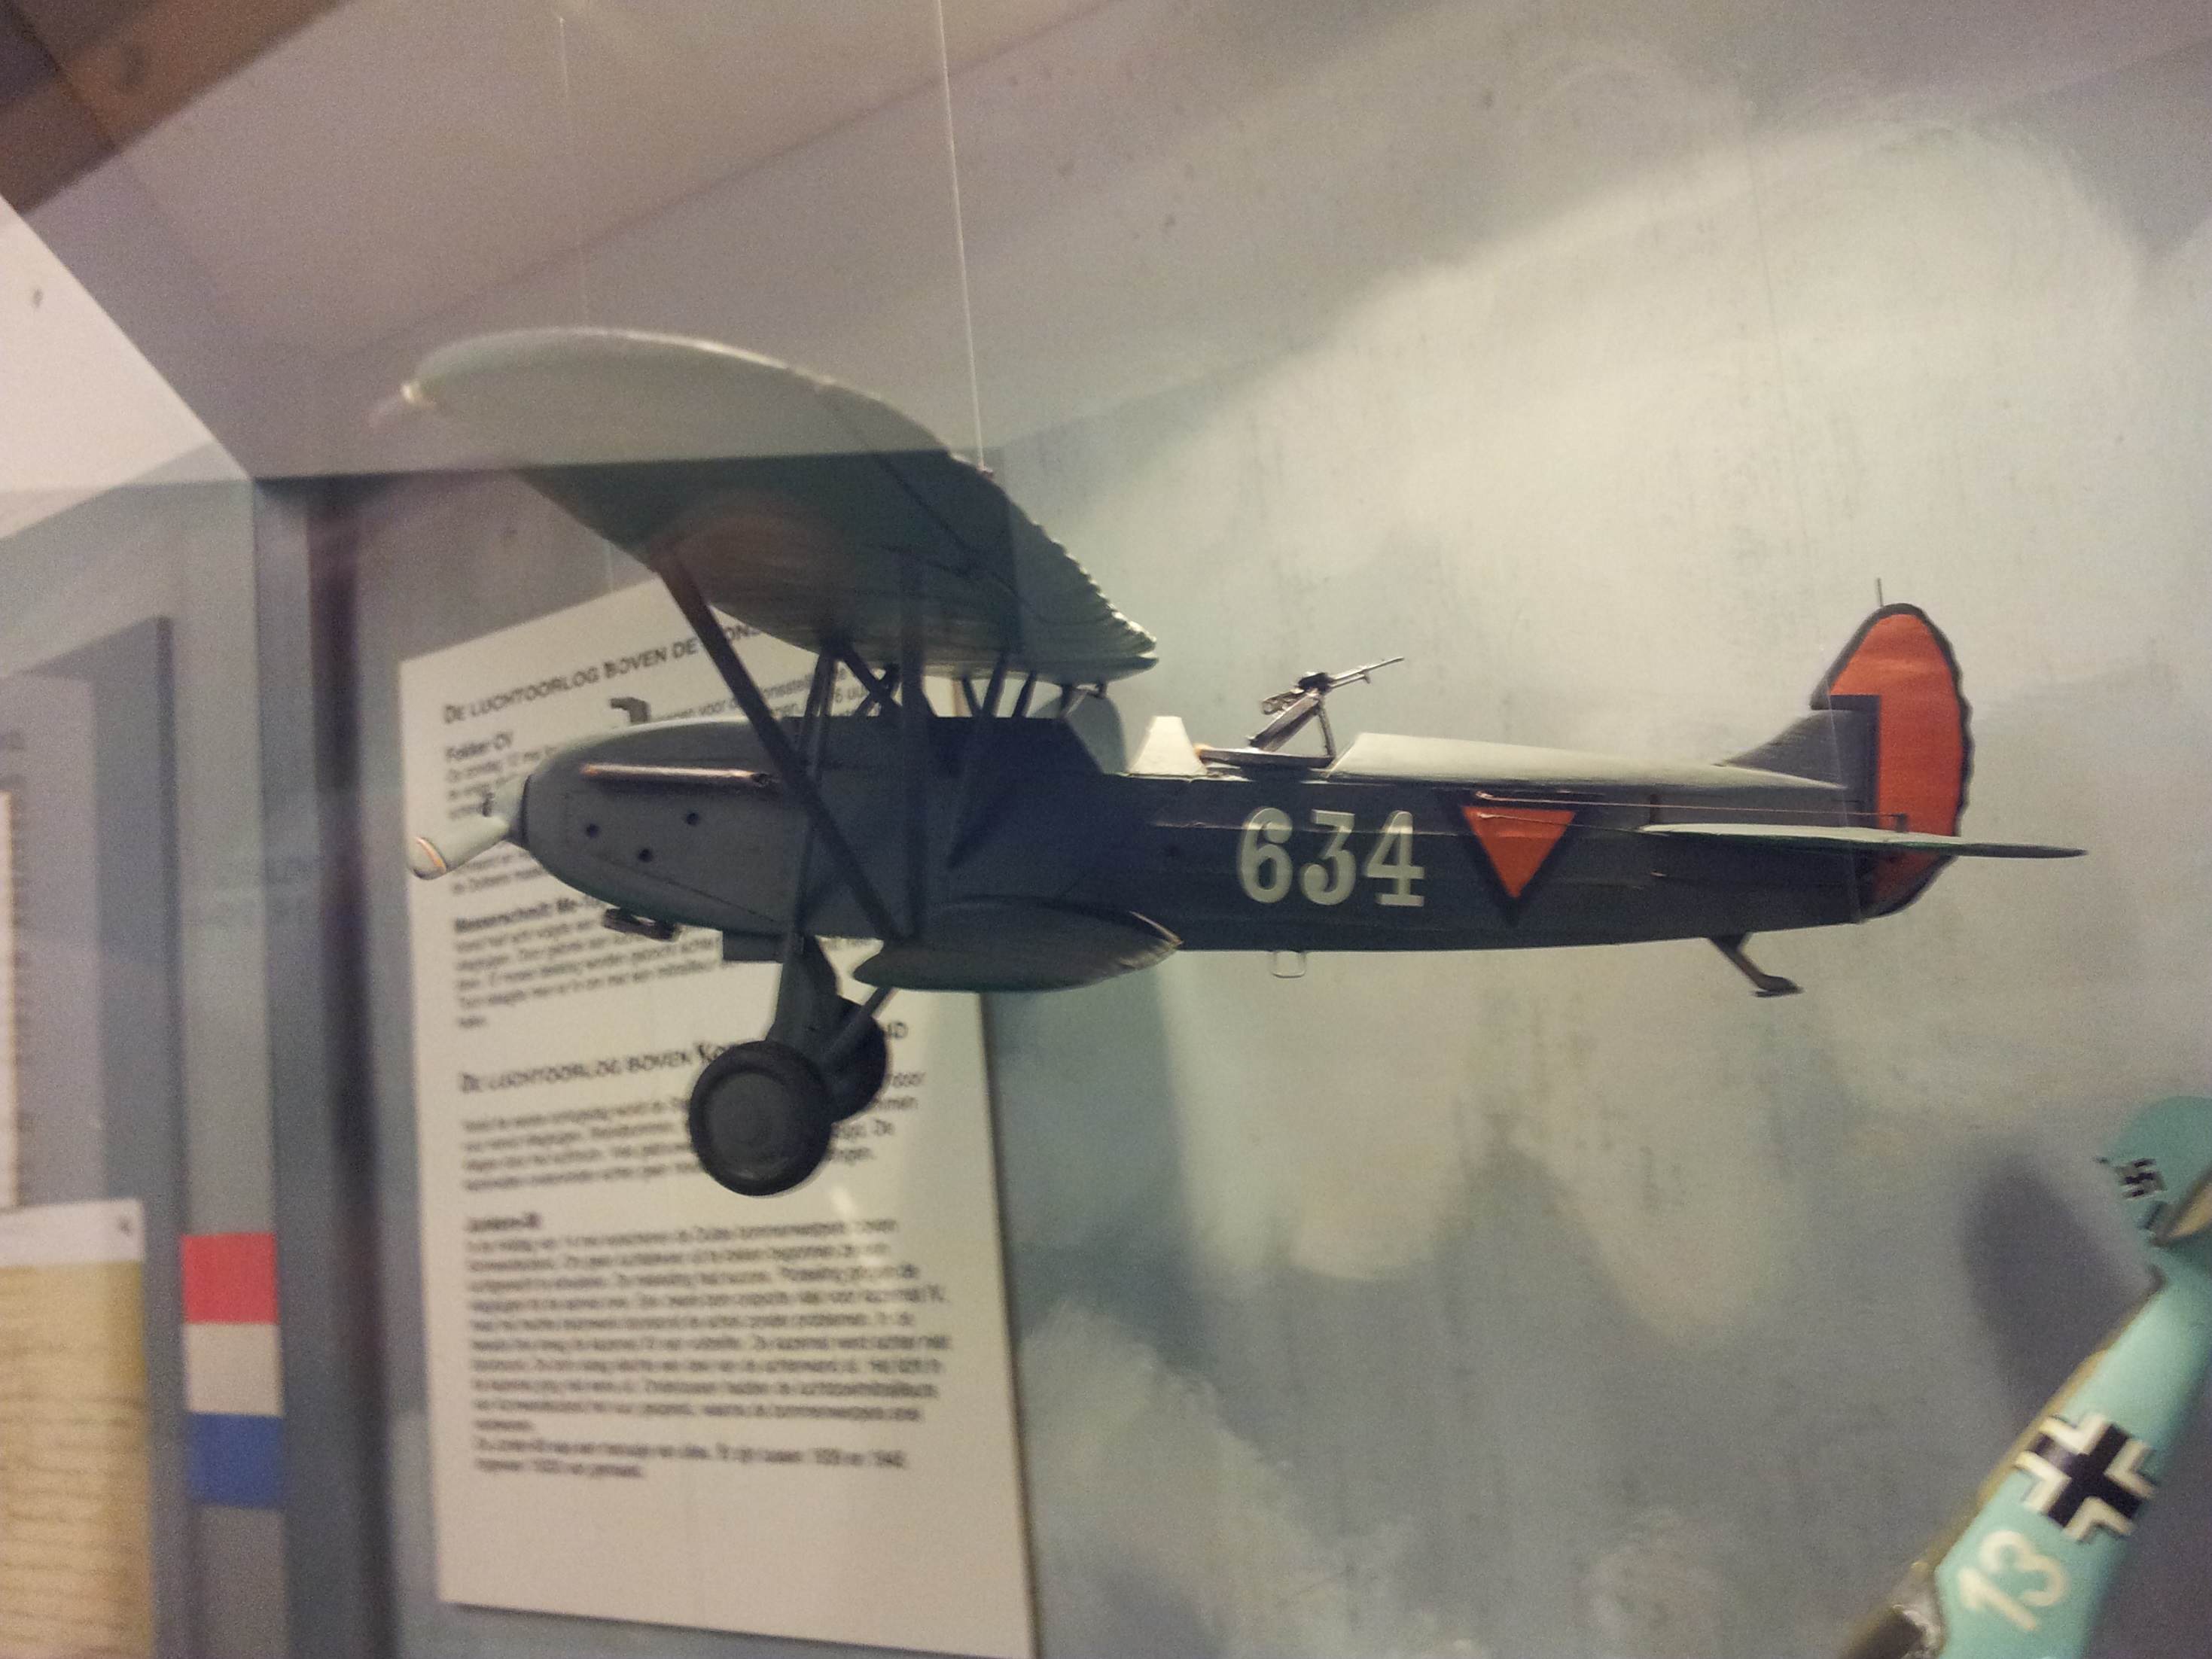 Det nederlandske luftforsvaret eller Luchtvaartbrigade som det het under krigen